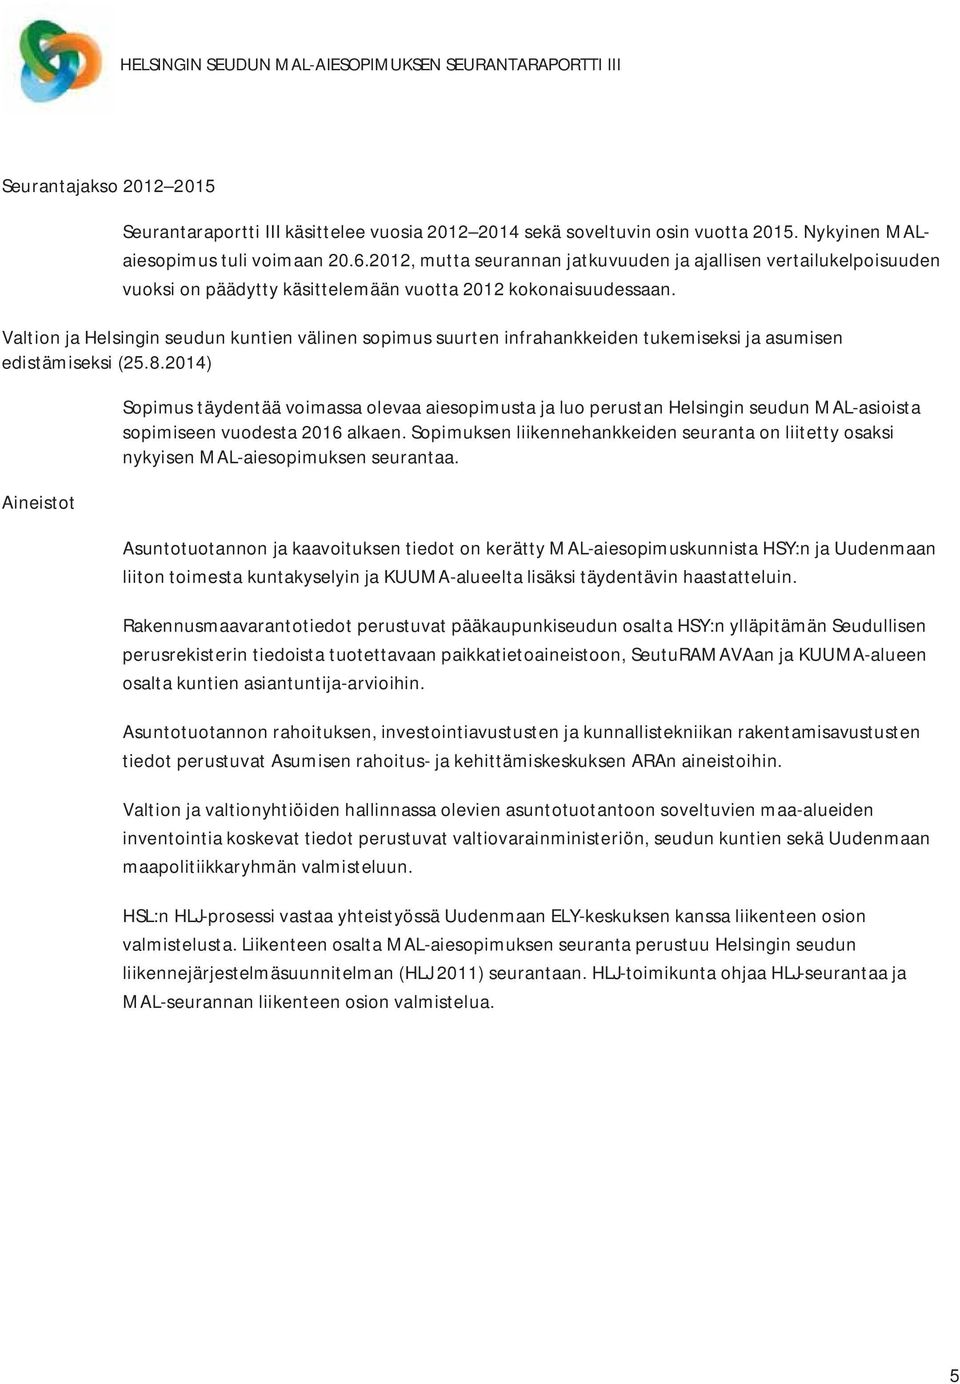 Valtion ja Helsingin seudun kuntien välinen sopimus suurten infrahankkeiden tukemiseksi ja asumisen edistämiseksi (25.8.